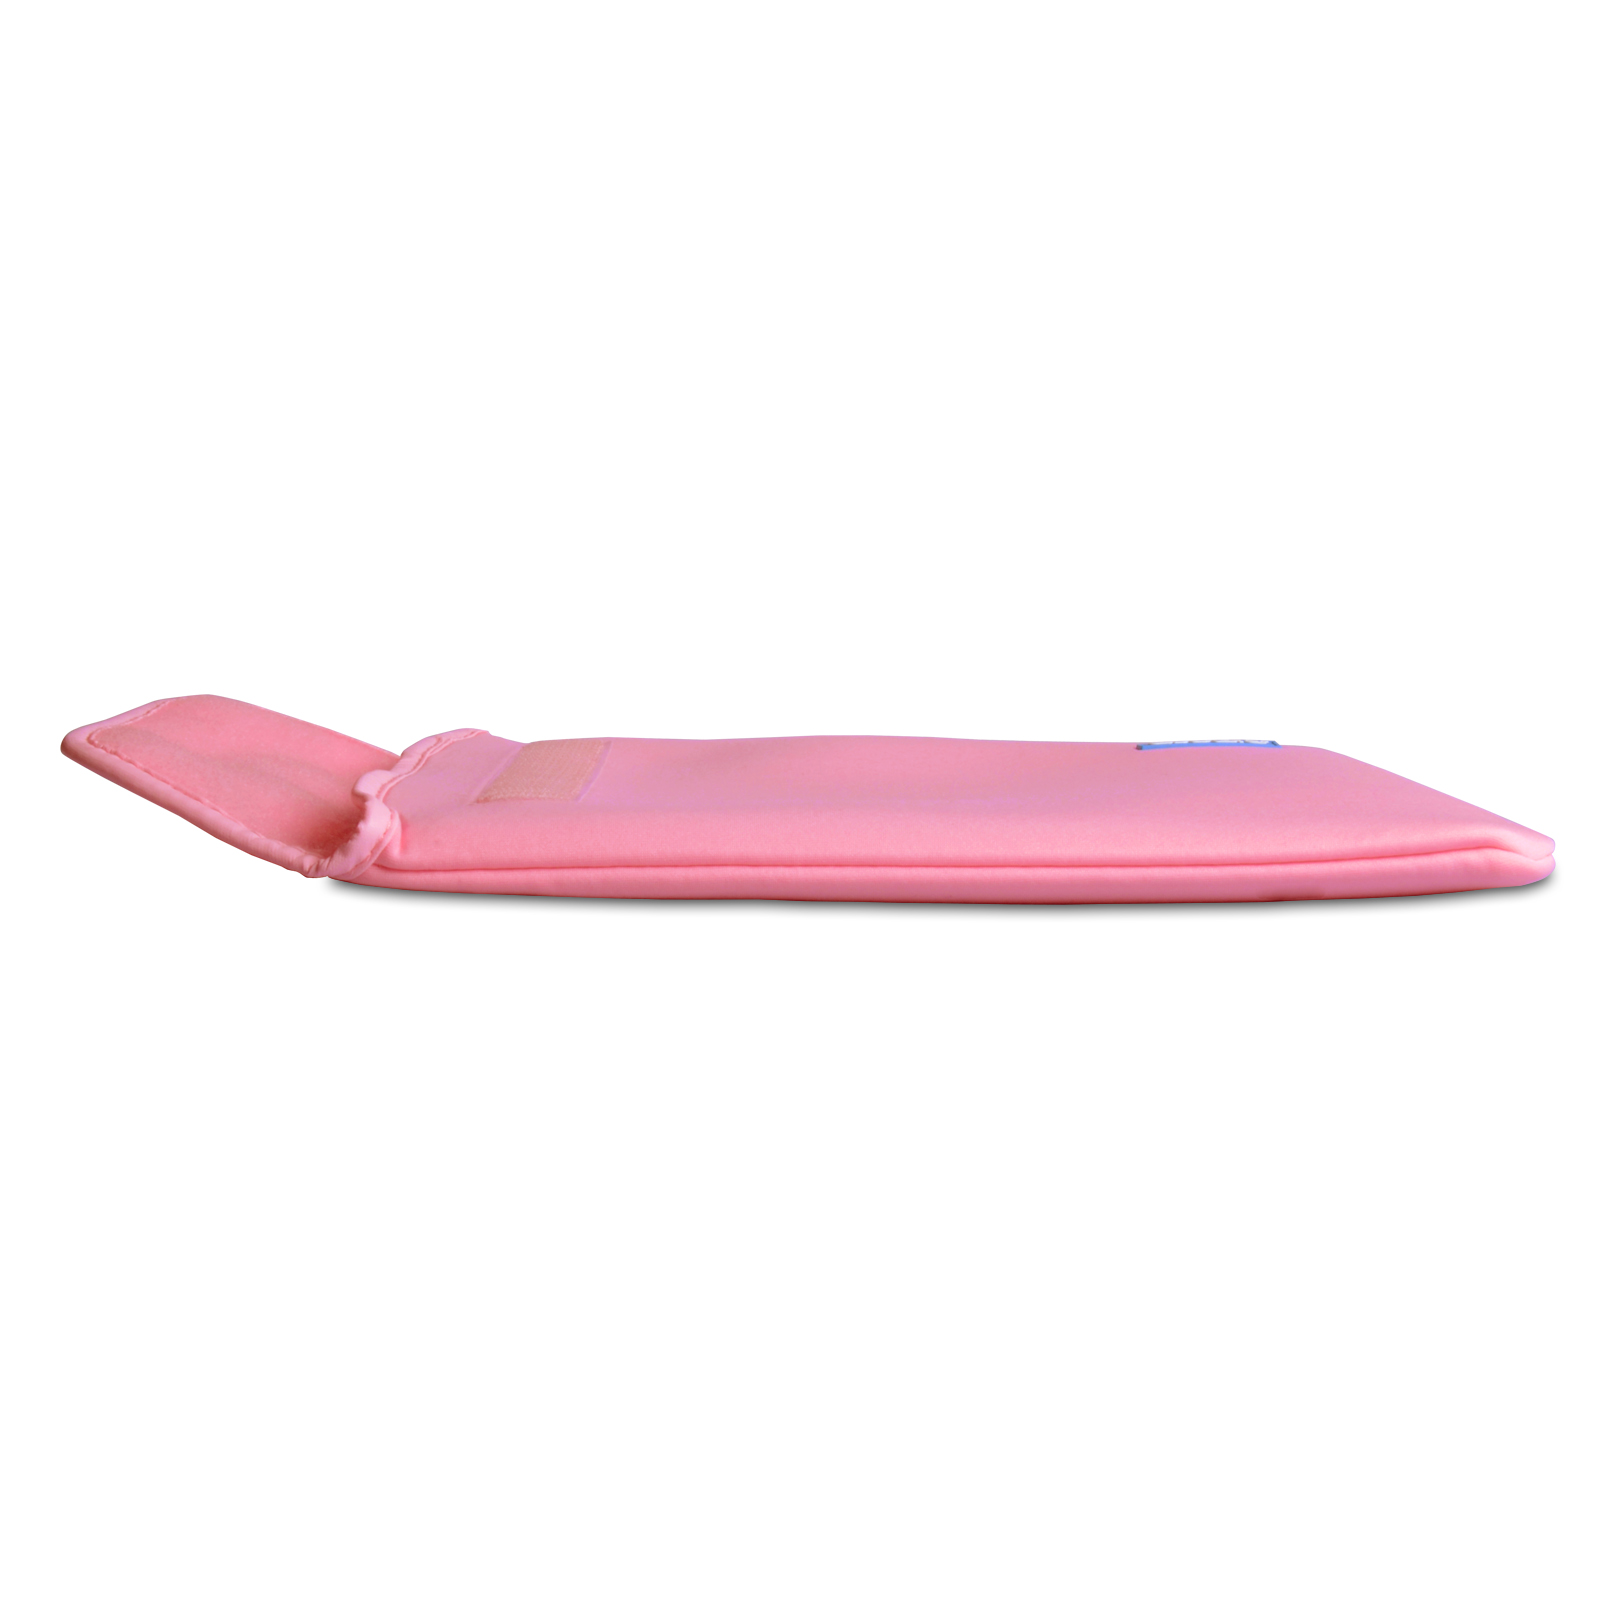 Caseflex 10 Inch Baby Pink Neoprene Tablet Pouch (M) 